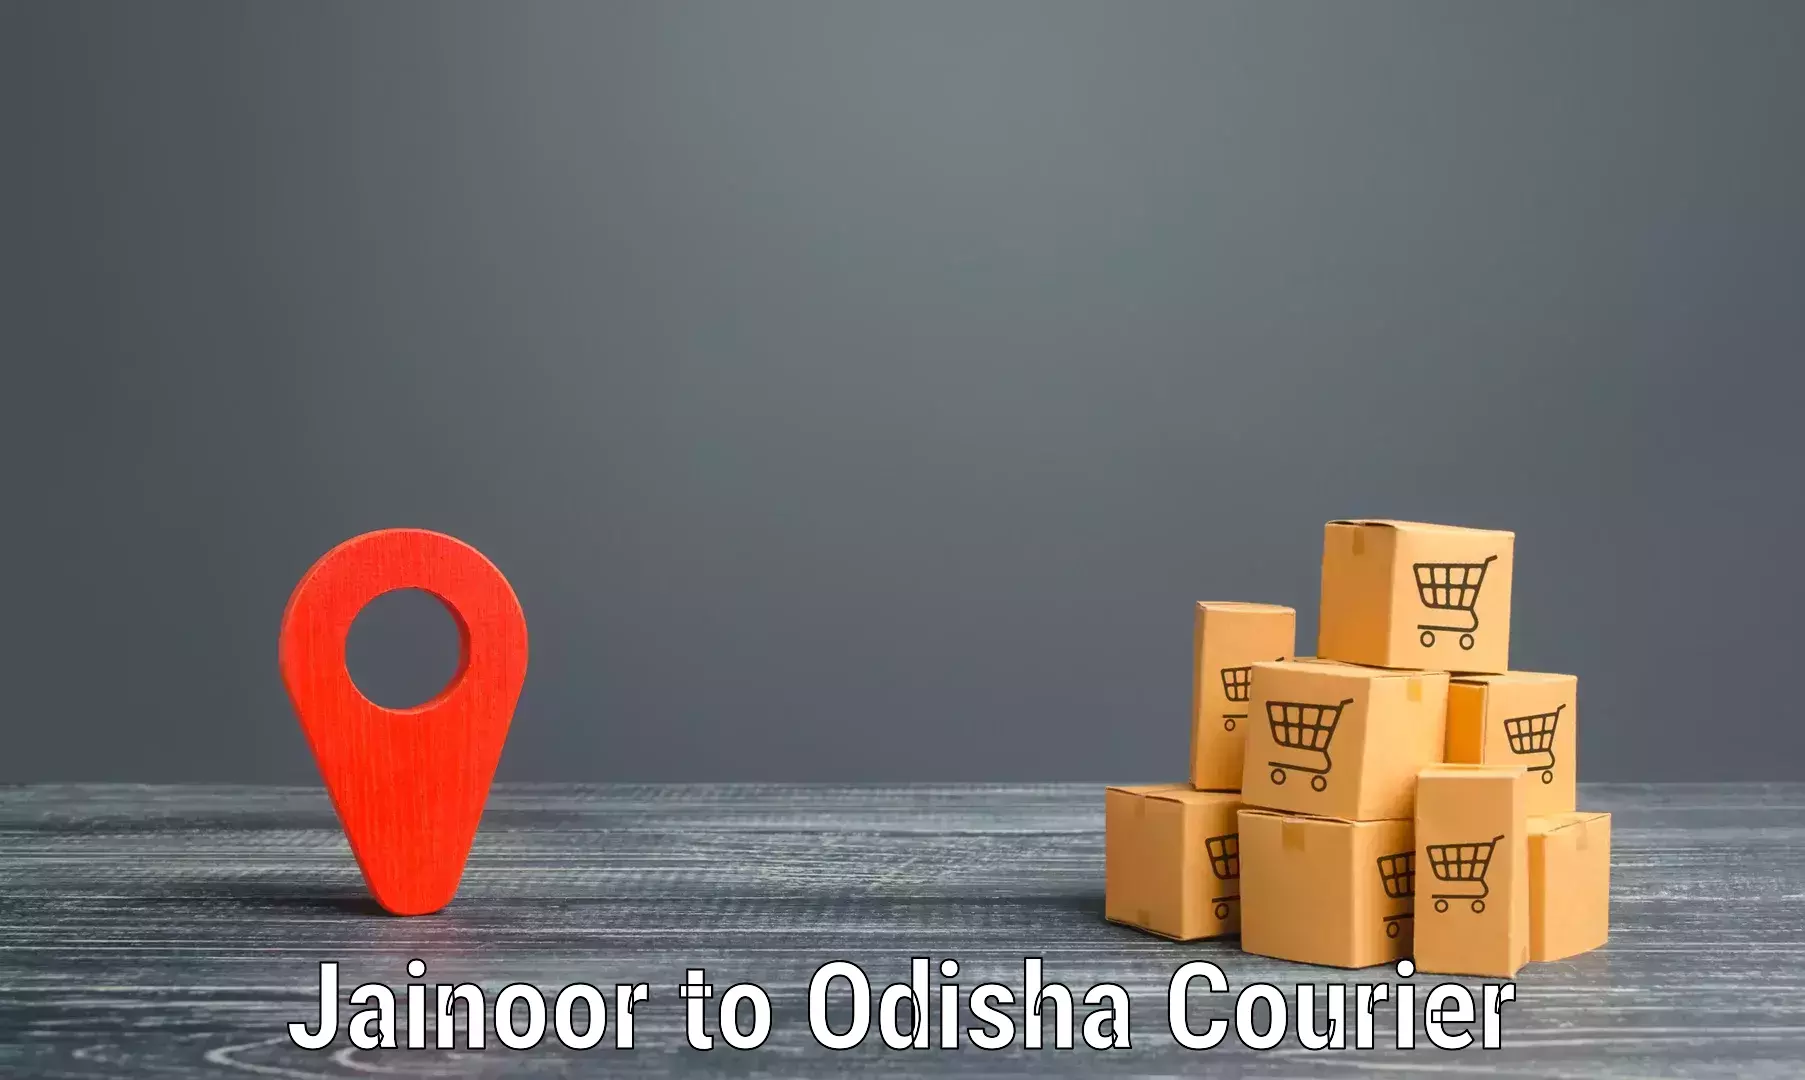 Courier service efficiency Jainoor to Bargarh